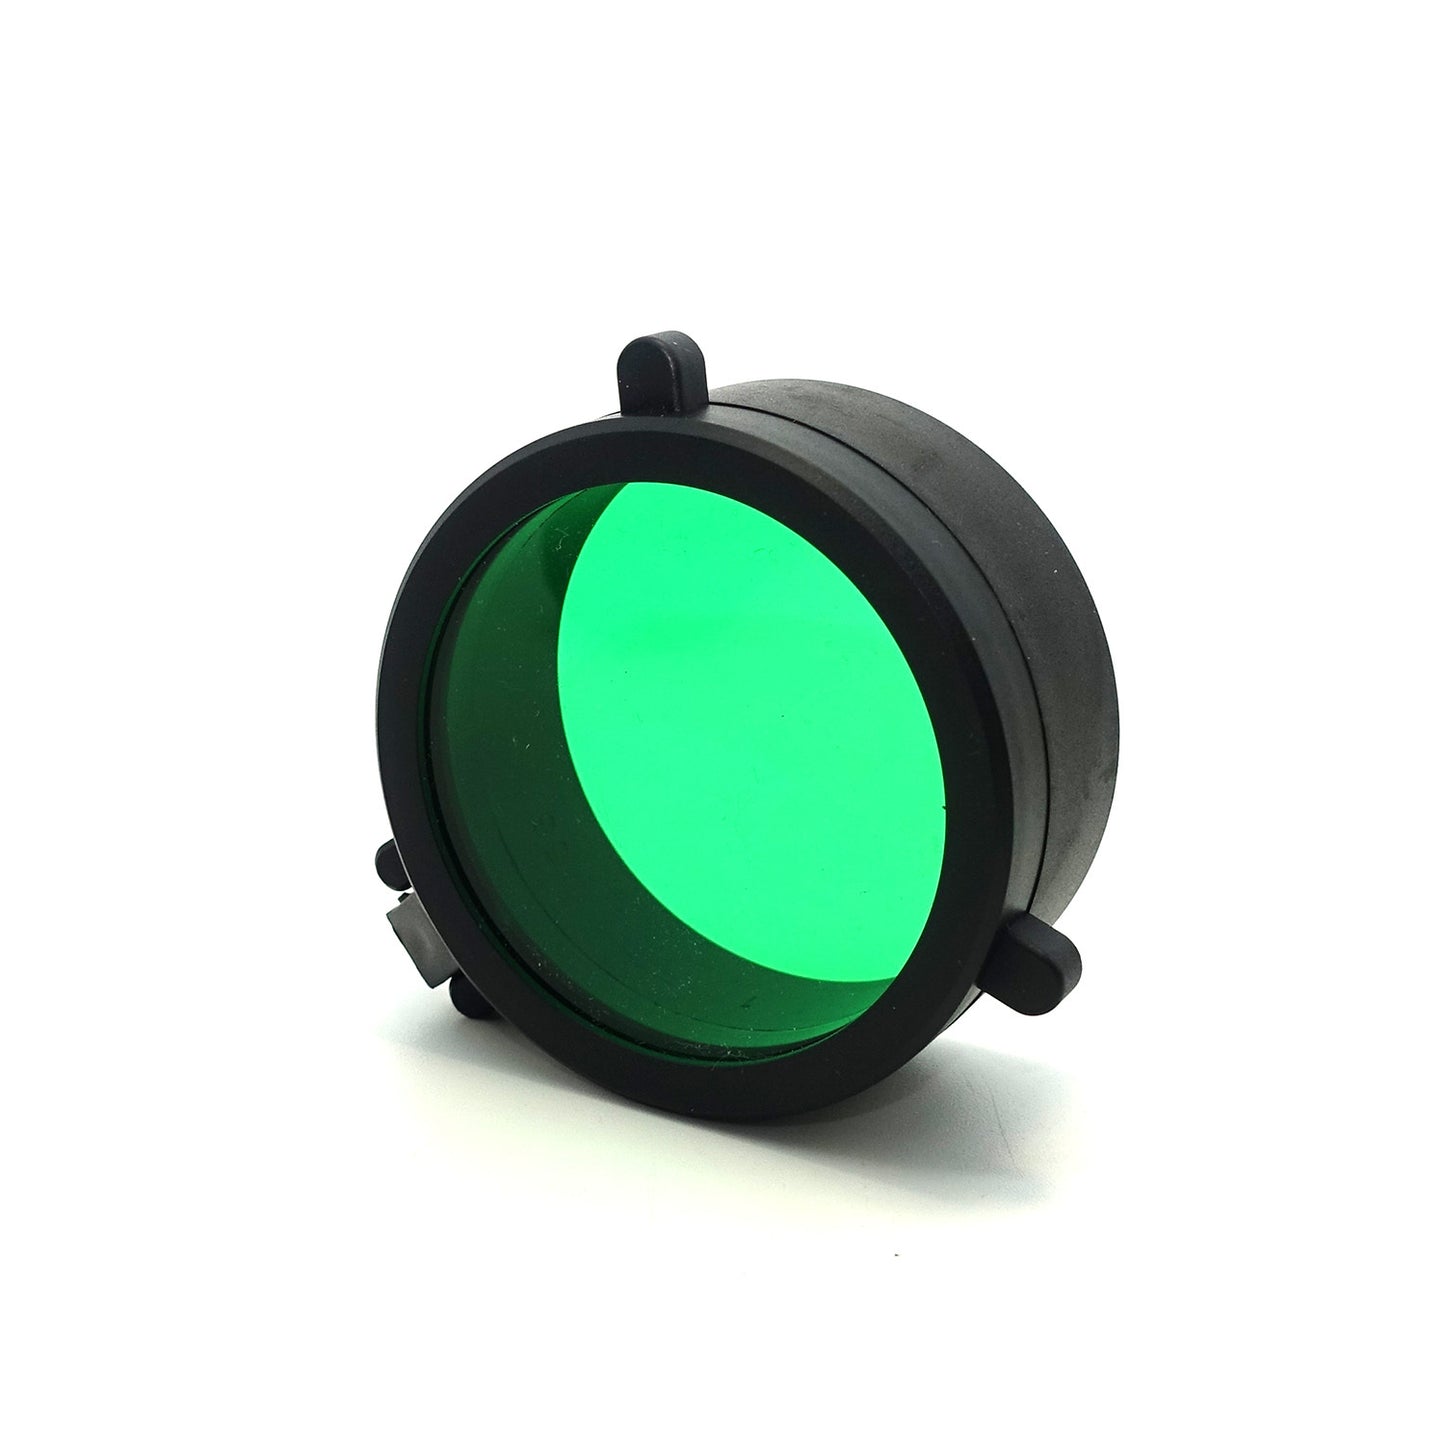 Xhunter Xhunter Flip Open Flashlight Scope Cover - 50Mm Green #05689 Medium Spring Green